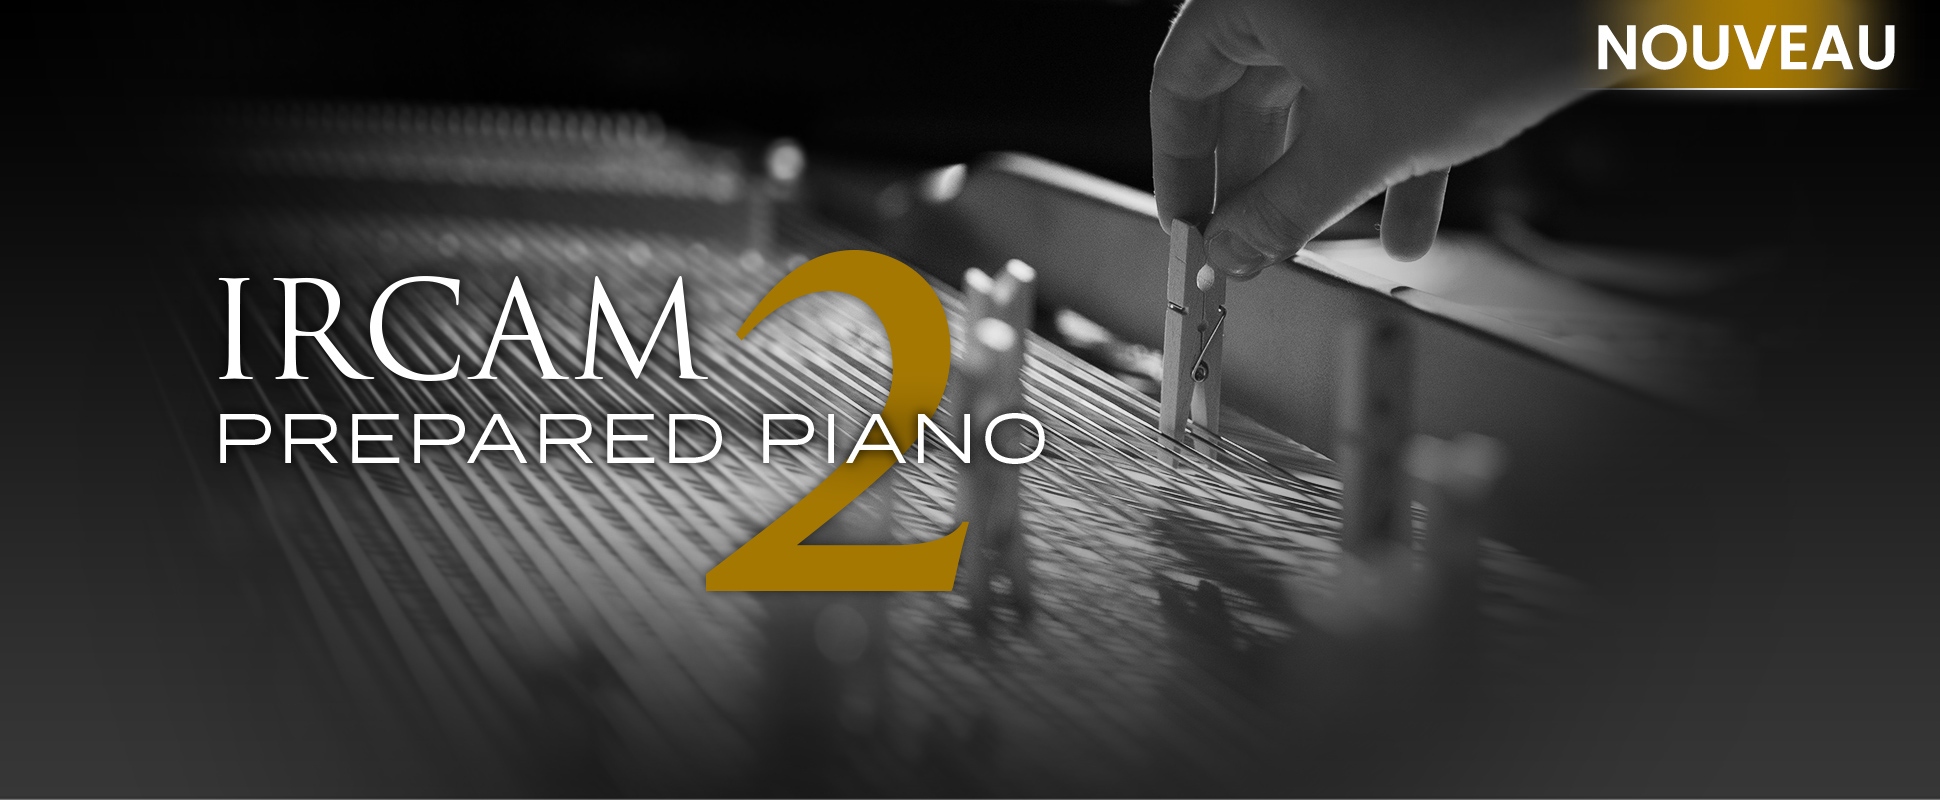 IRCAM Prepared Piano 2 - New